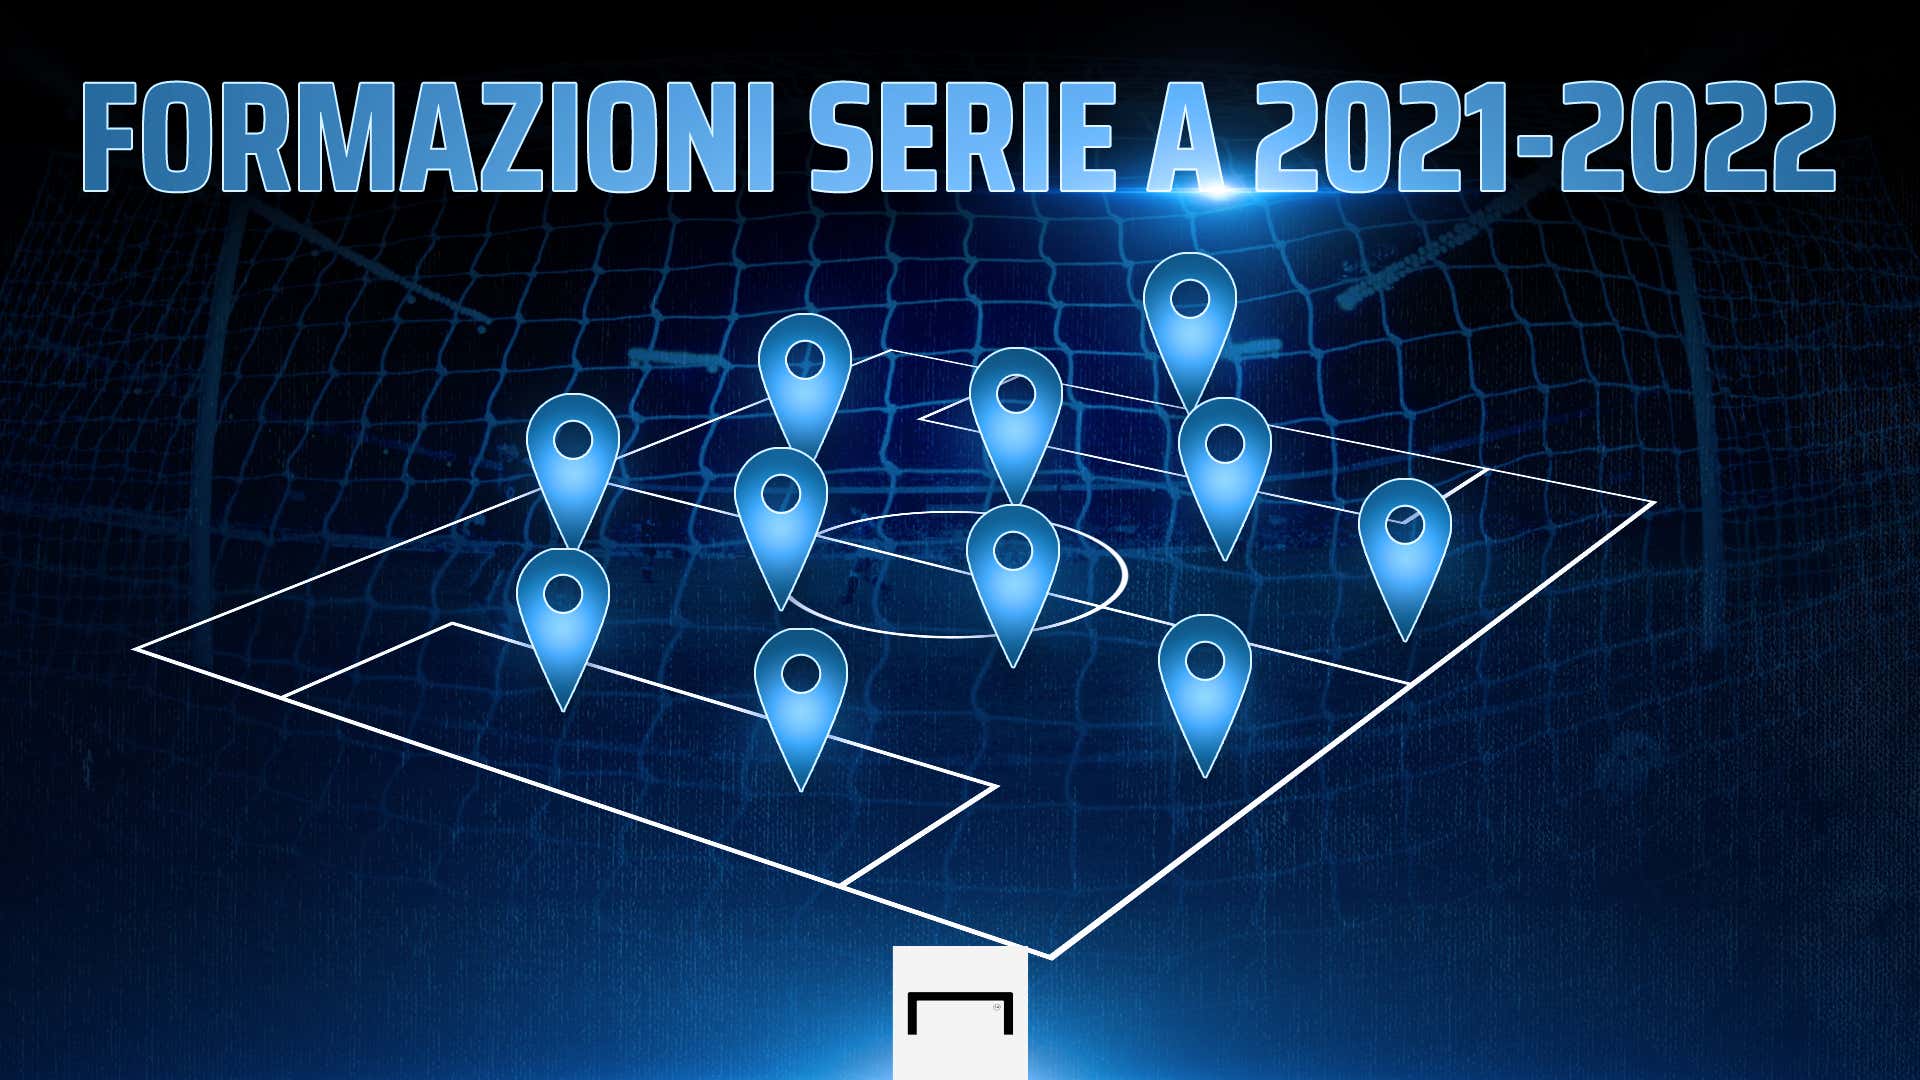 Formazioni Serie A 2021/2022